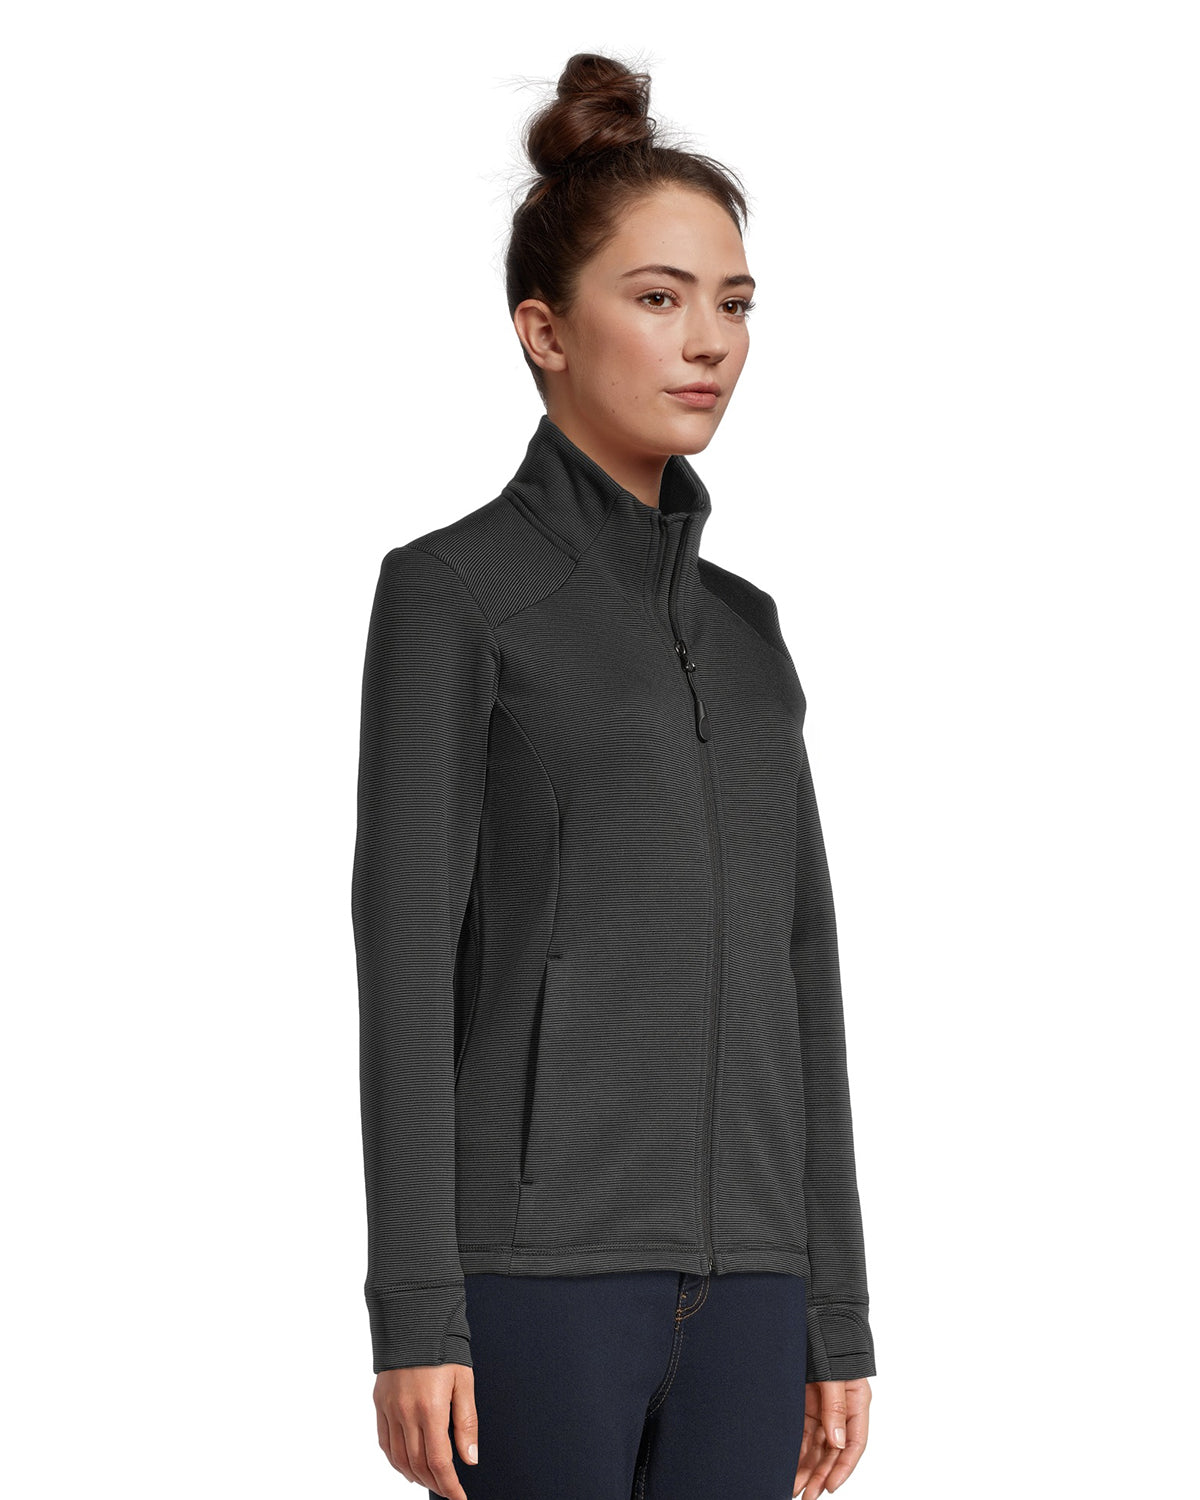 Aspire Women's Microstripe Brushback Fleece Jacket